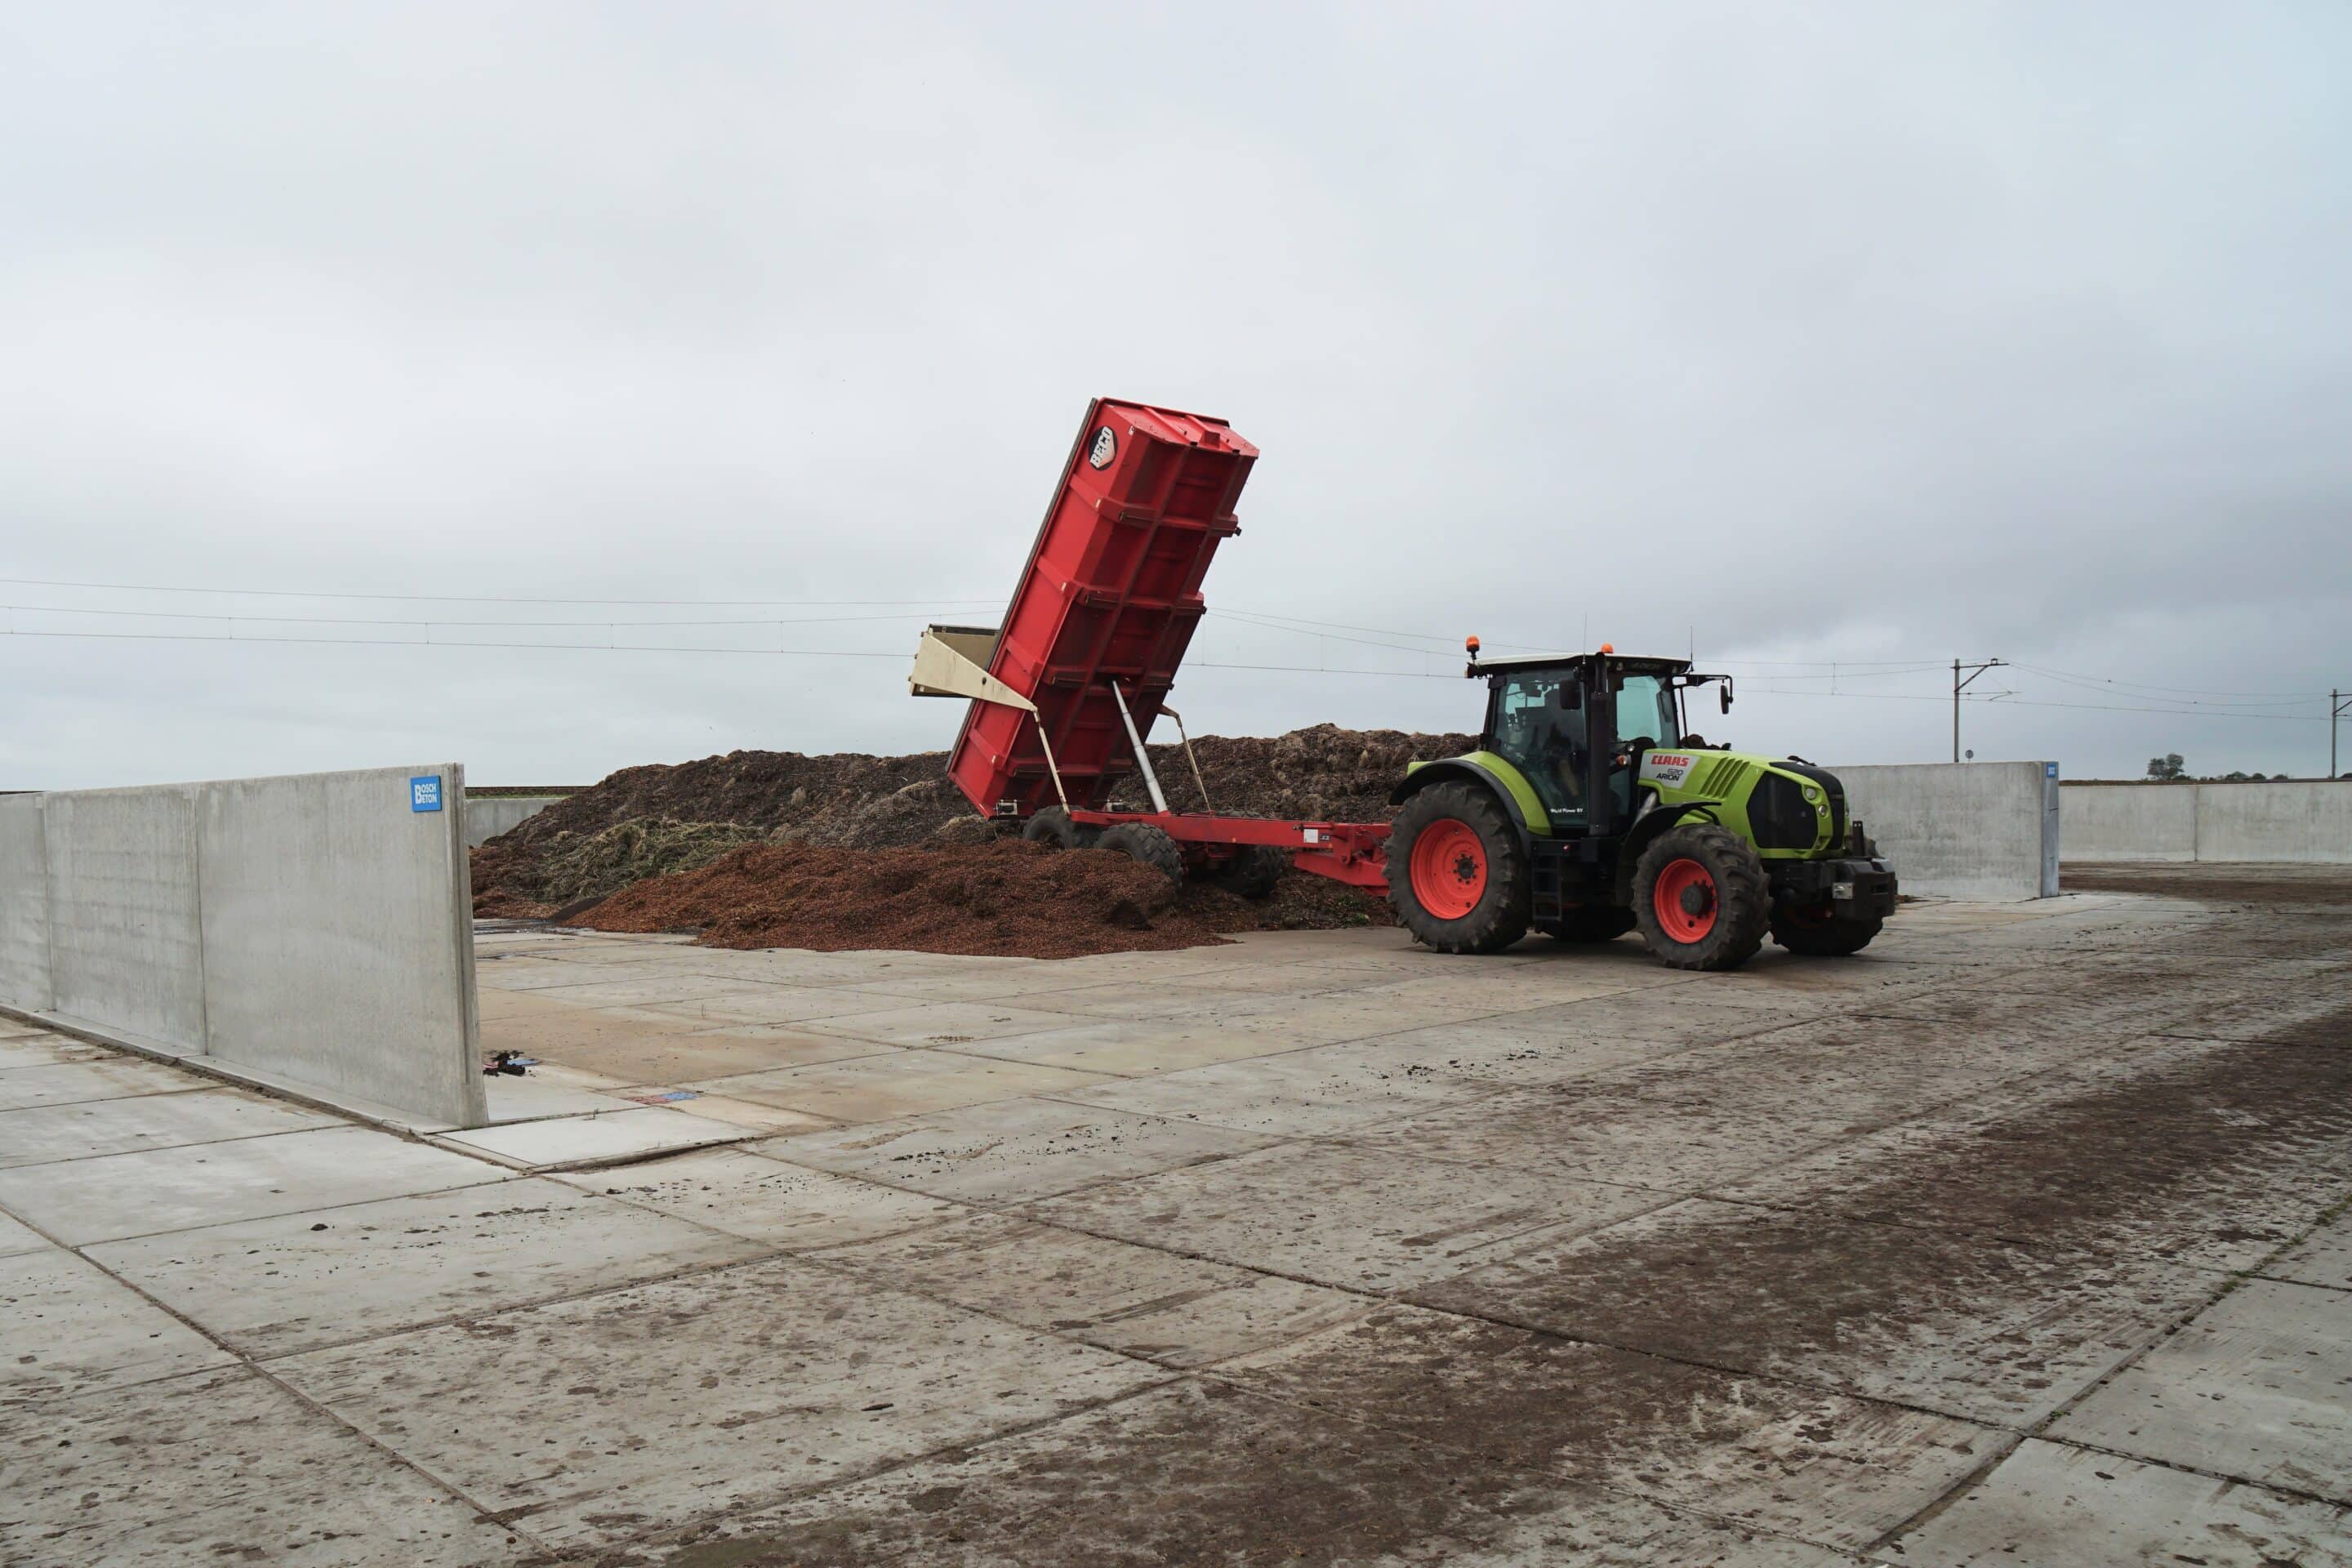 Bosch Beton - Sleufsilo duurzame oplossing voor composteringsprobleem